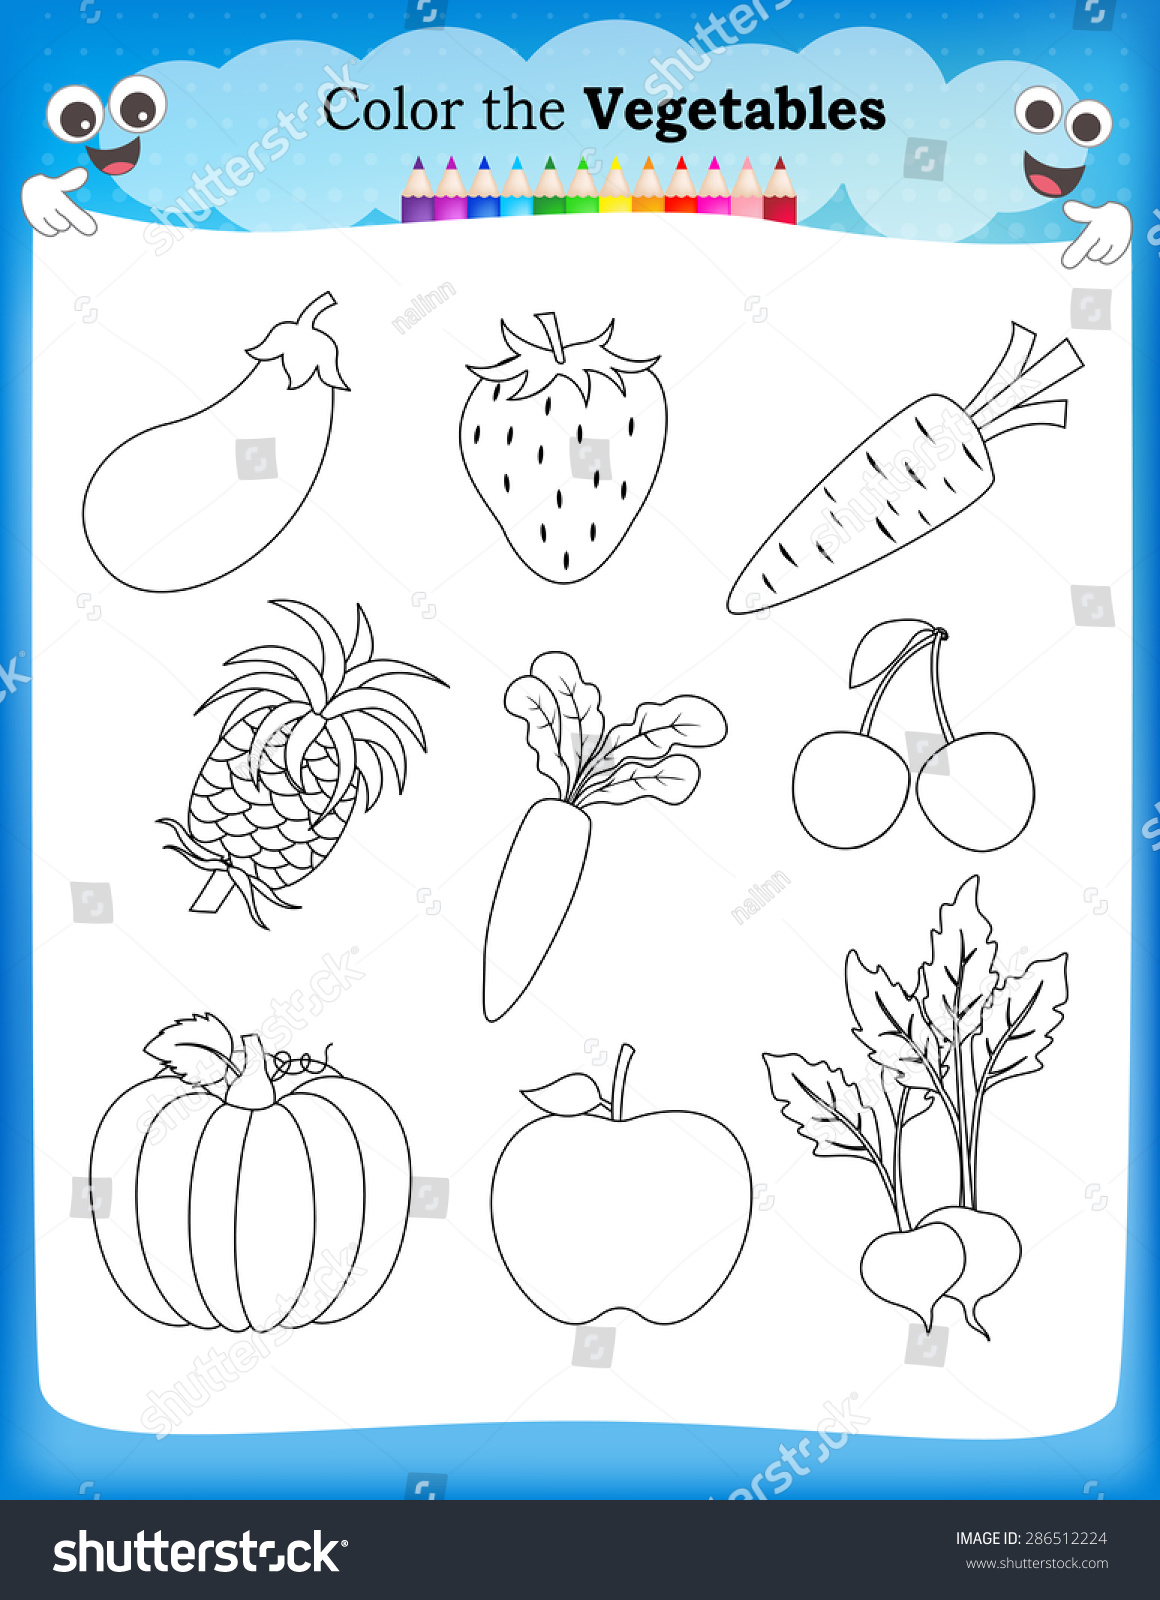 Worksheets On Fruits And Vegetables For Kindergarten